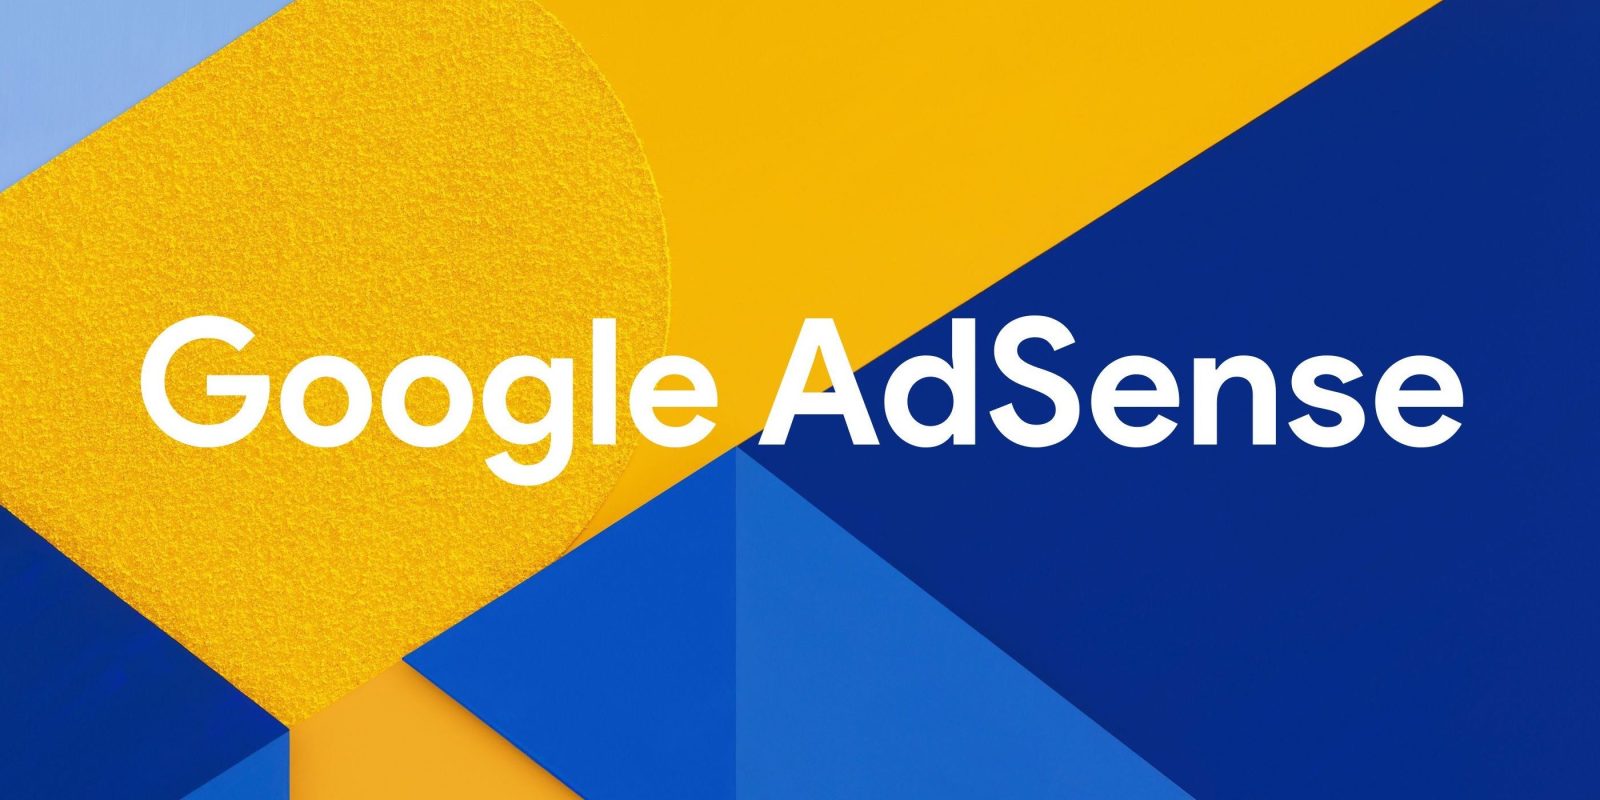 Google AdSense vai monetizar conteúdo sobre armas, apostas e drogas